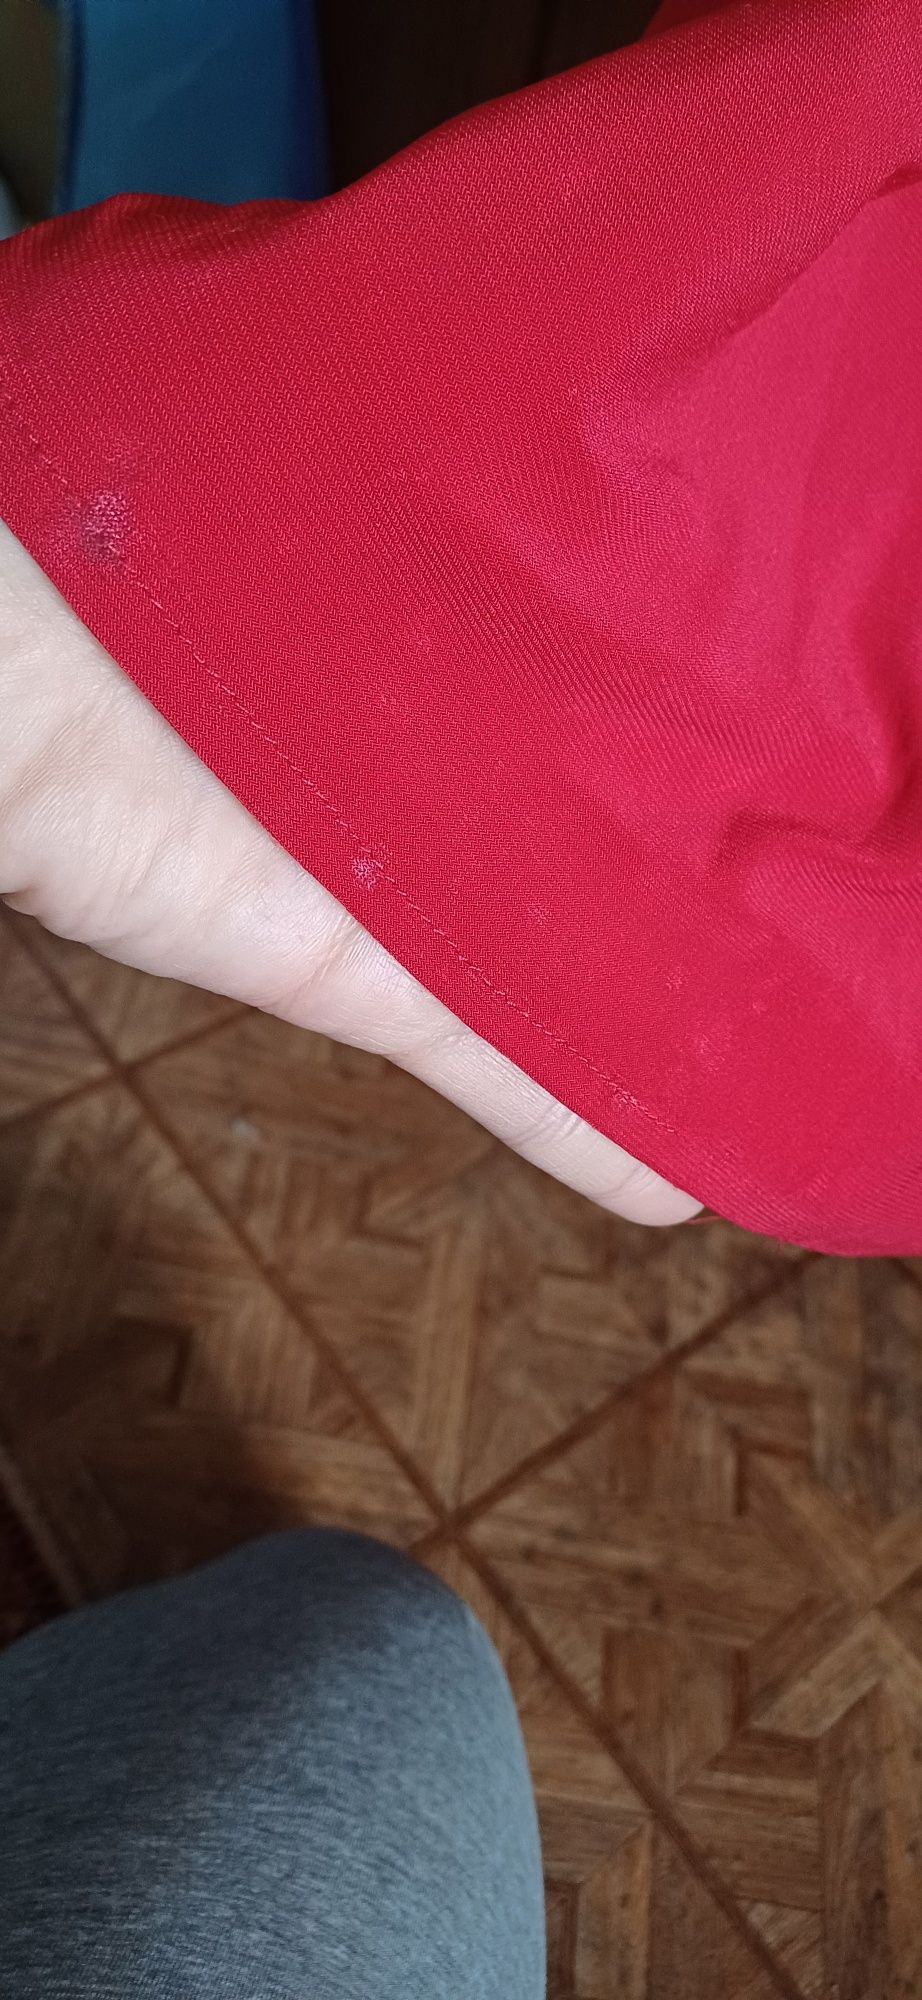 Sukienka czerwona maxi - sexy plecy, rozcięcie